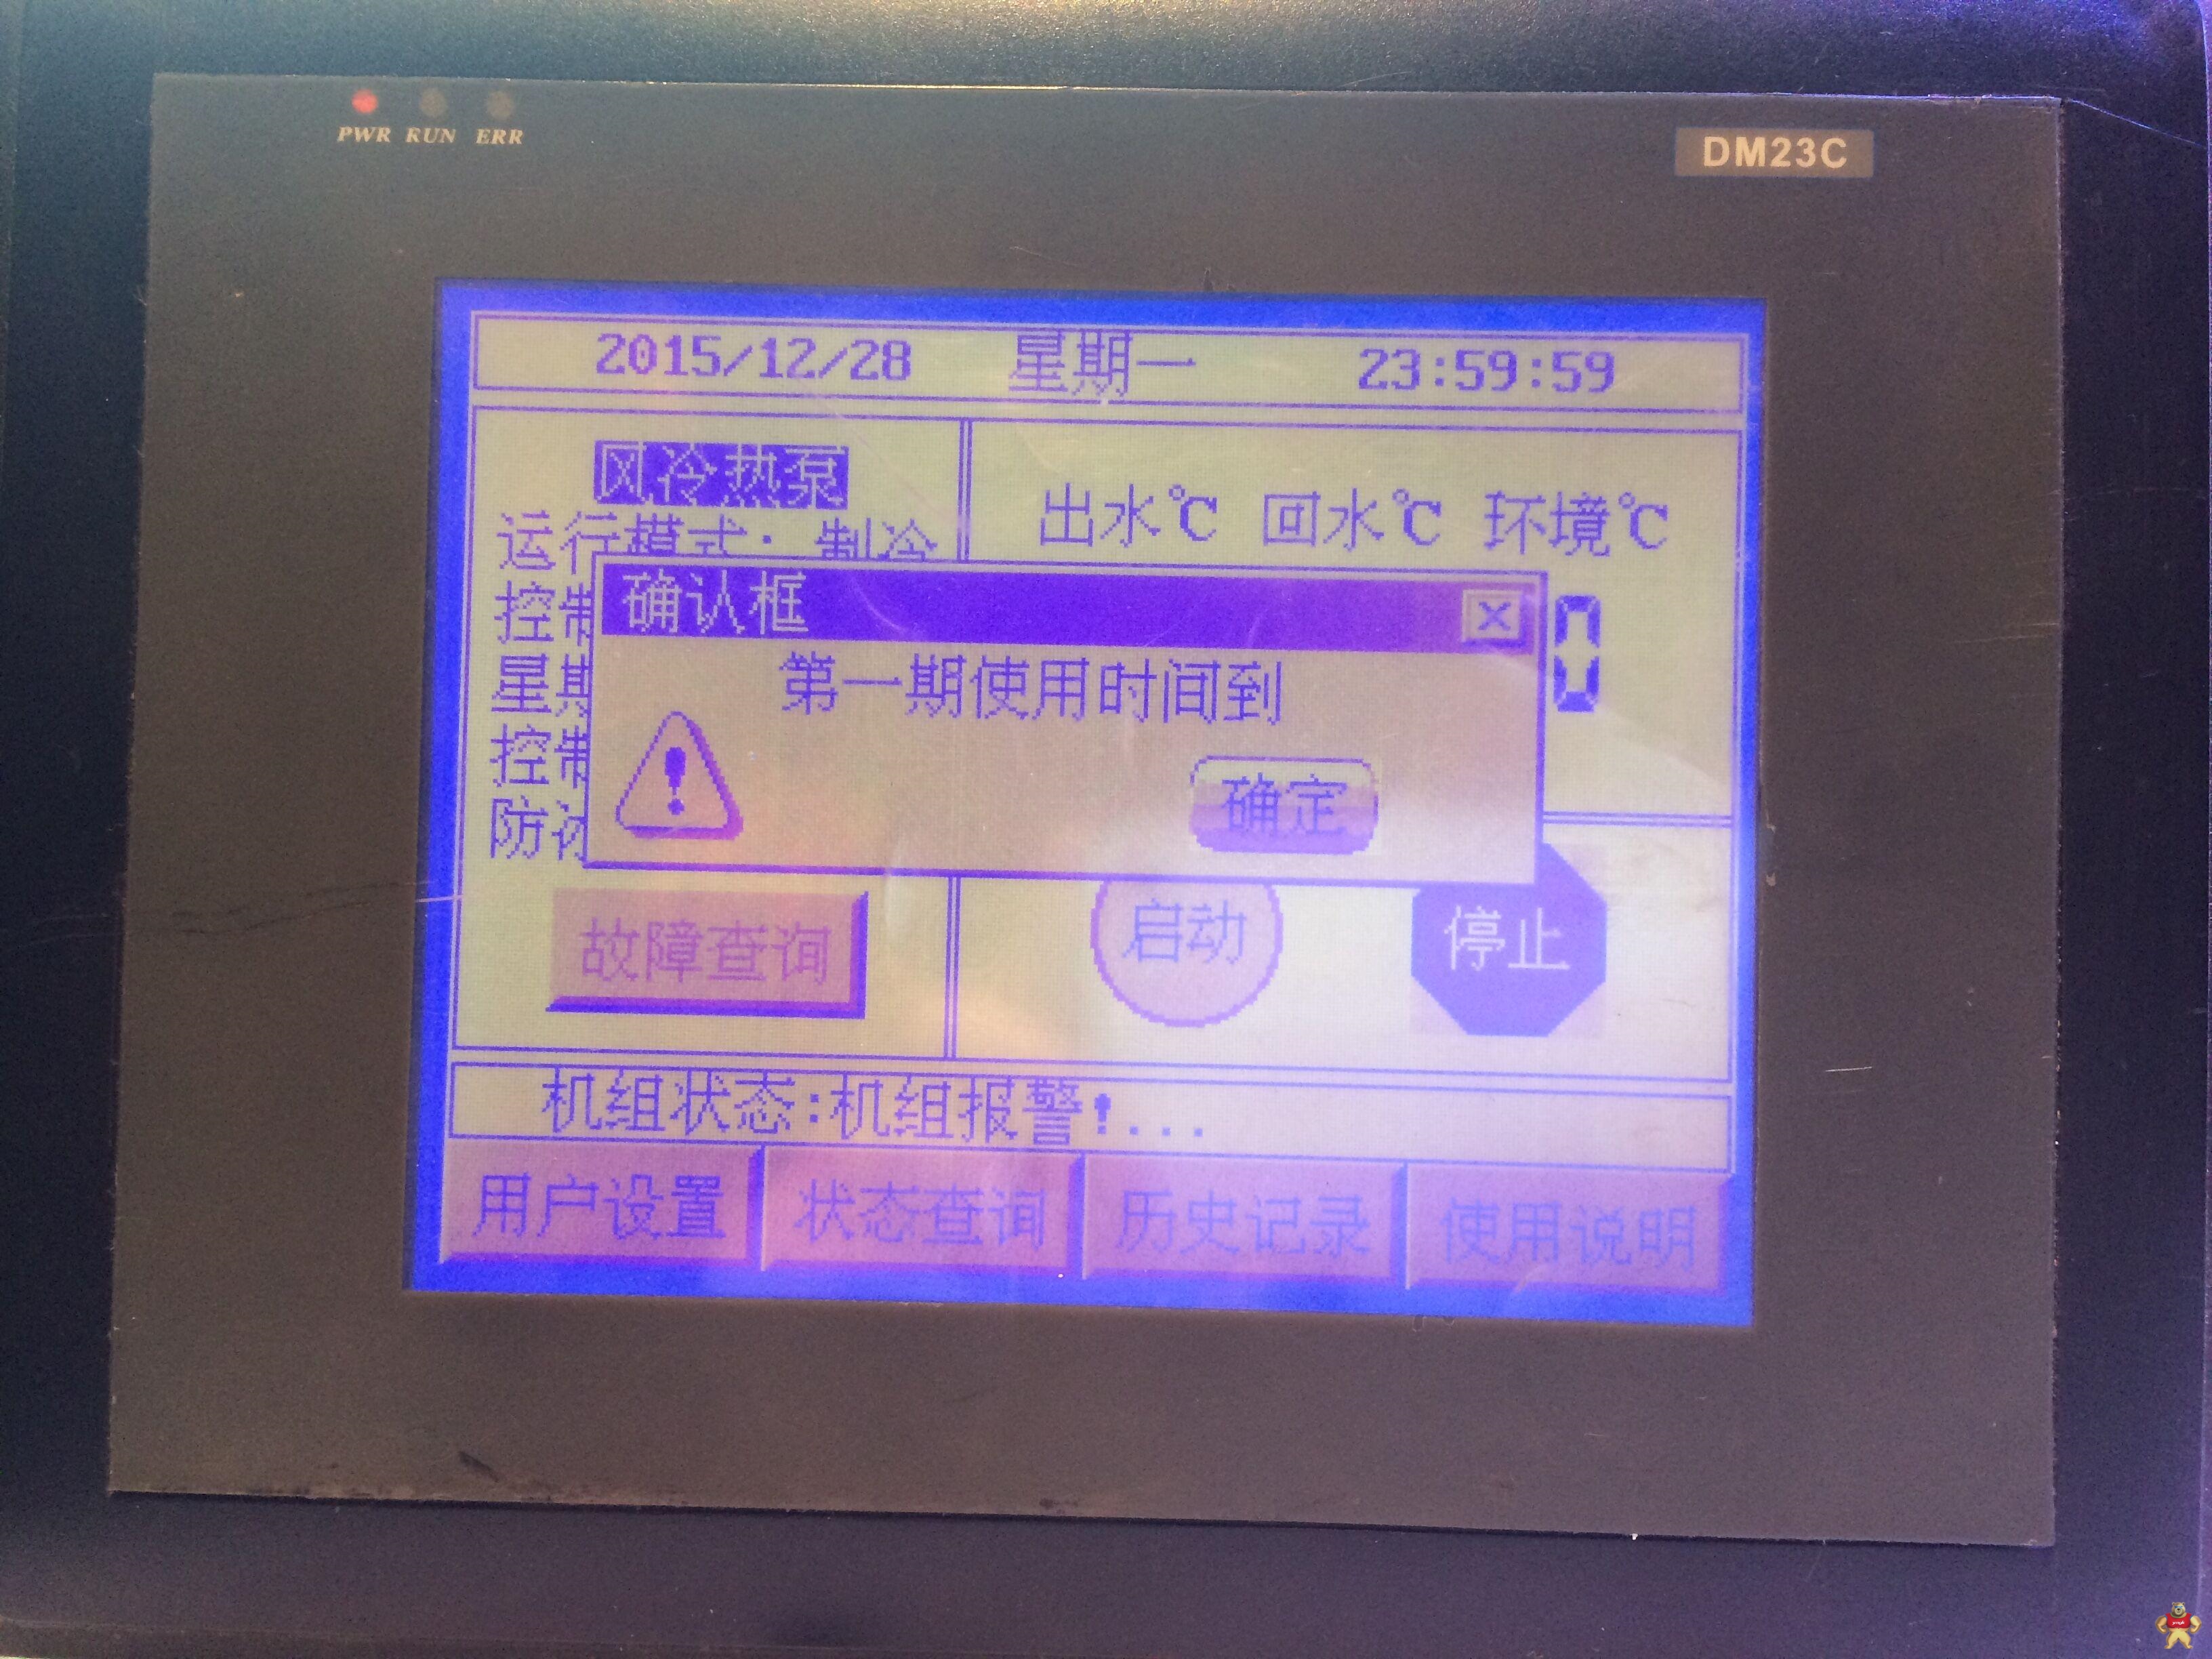 中央空调DM23C控制器屏幕显示“***期使用时间到”无法开机故障维修 水冷冷水,风冷冷水,风冷热泵,水源热泵,地源热泵